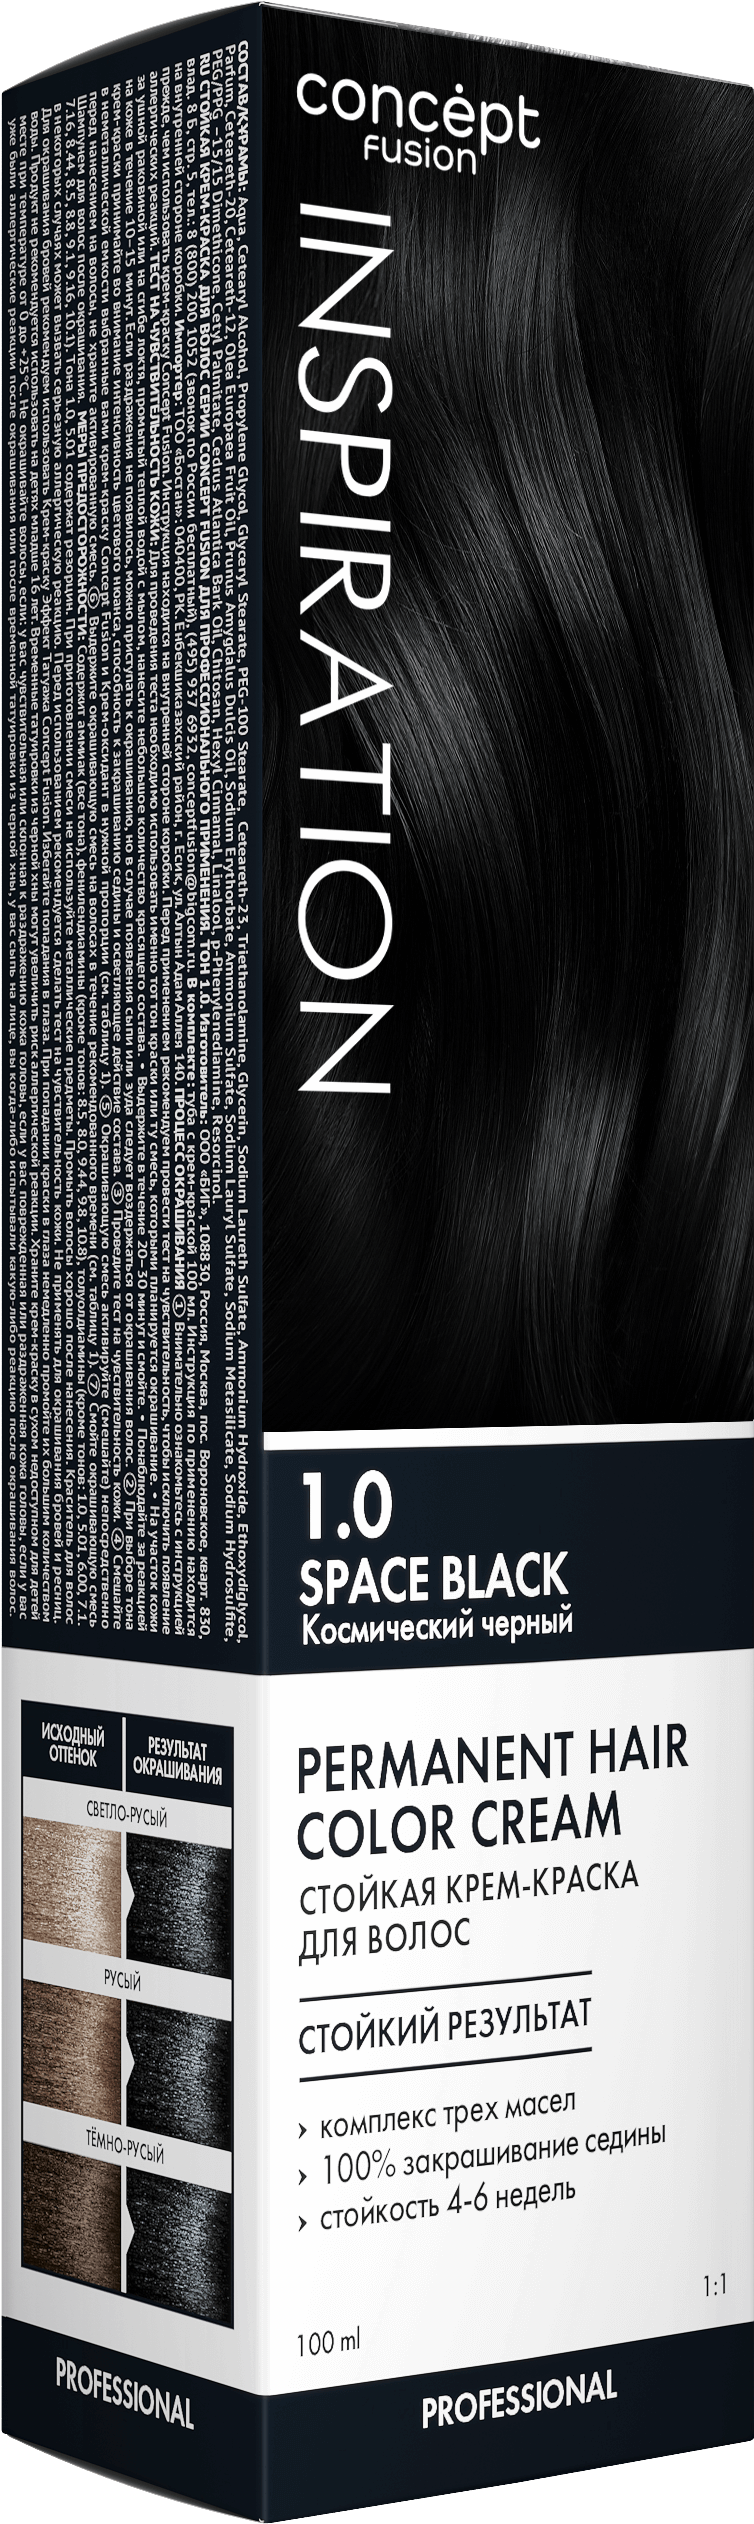 Крем-краска Concept Fusion Inspiration космический чёрный, №1.0, 100 мл бластер космический воин стреляет мягкими пулями